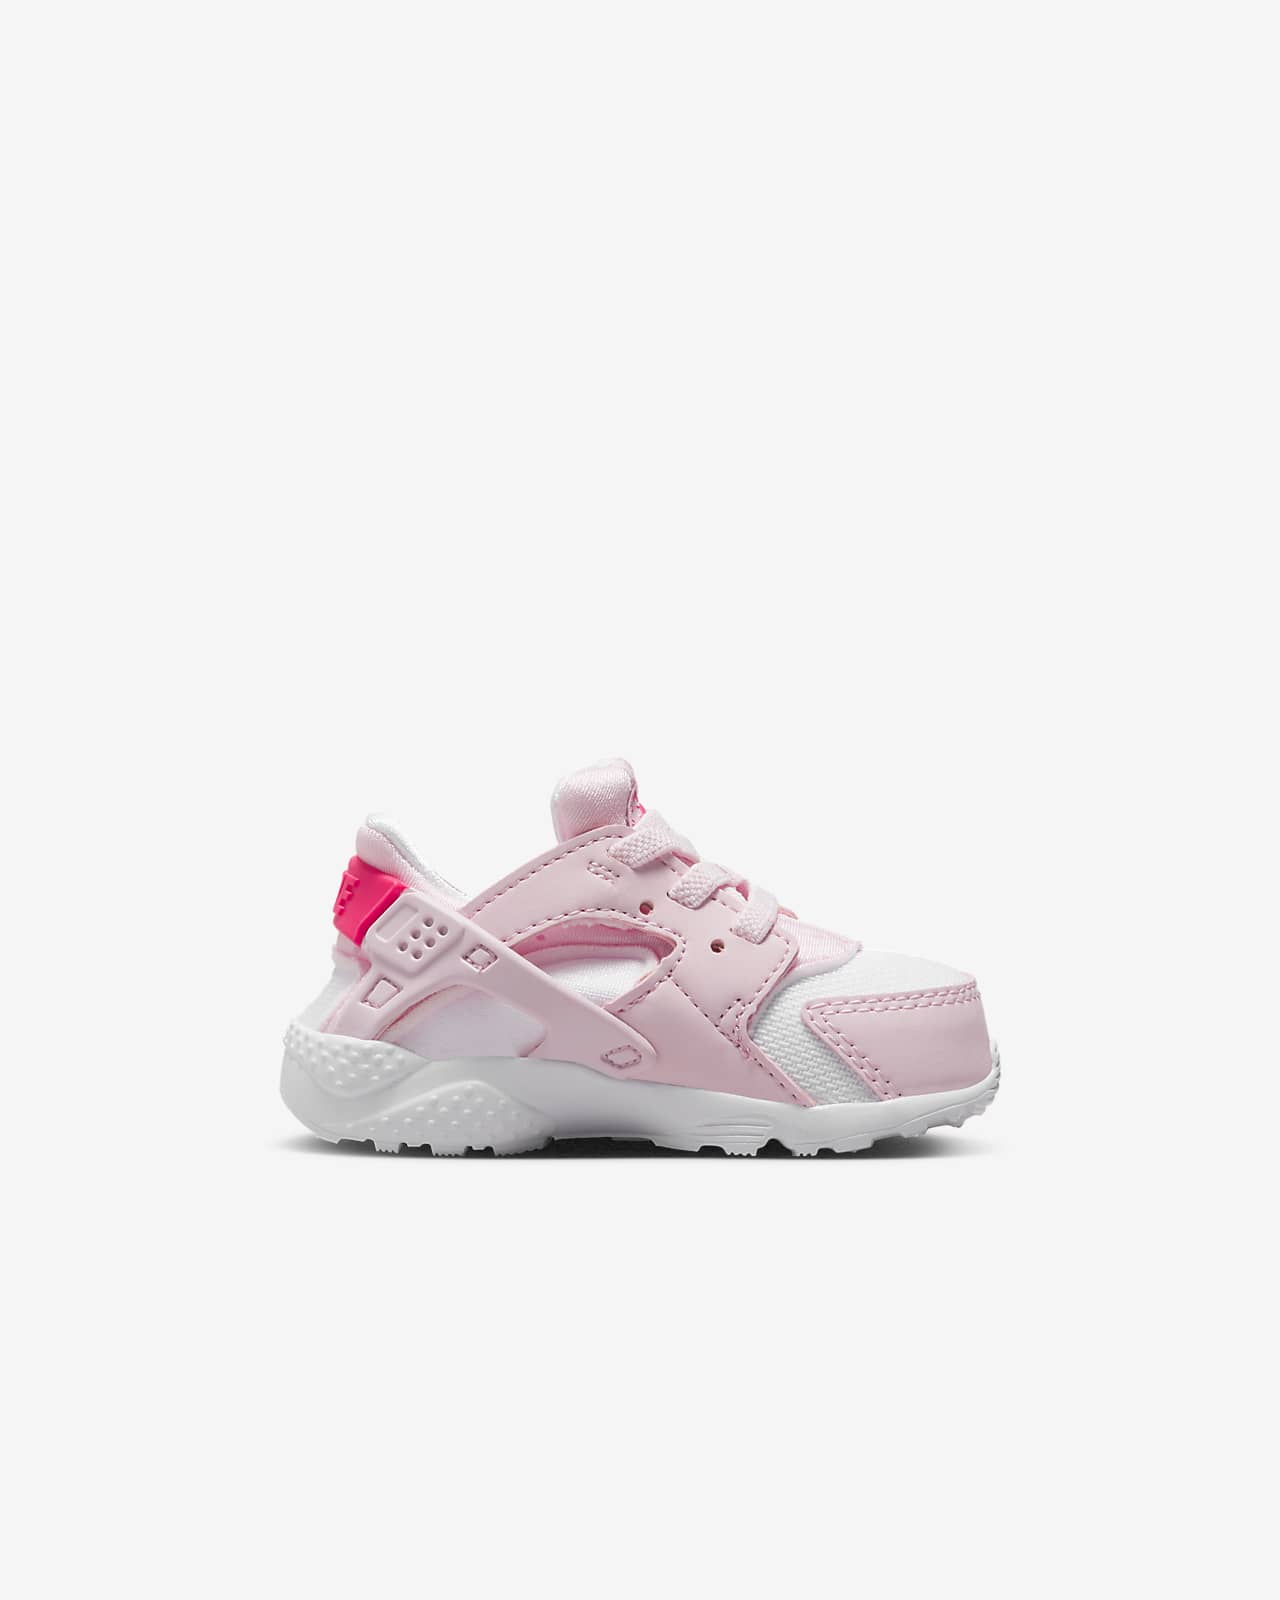 atleta mando Presta atención a Nike Huarache Run Baby and Toddler Shoes. Nike UK